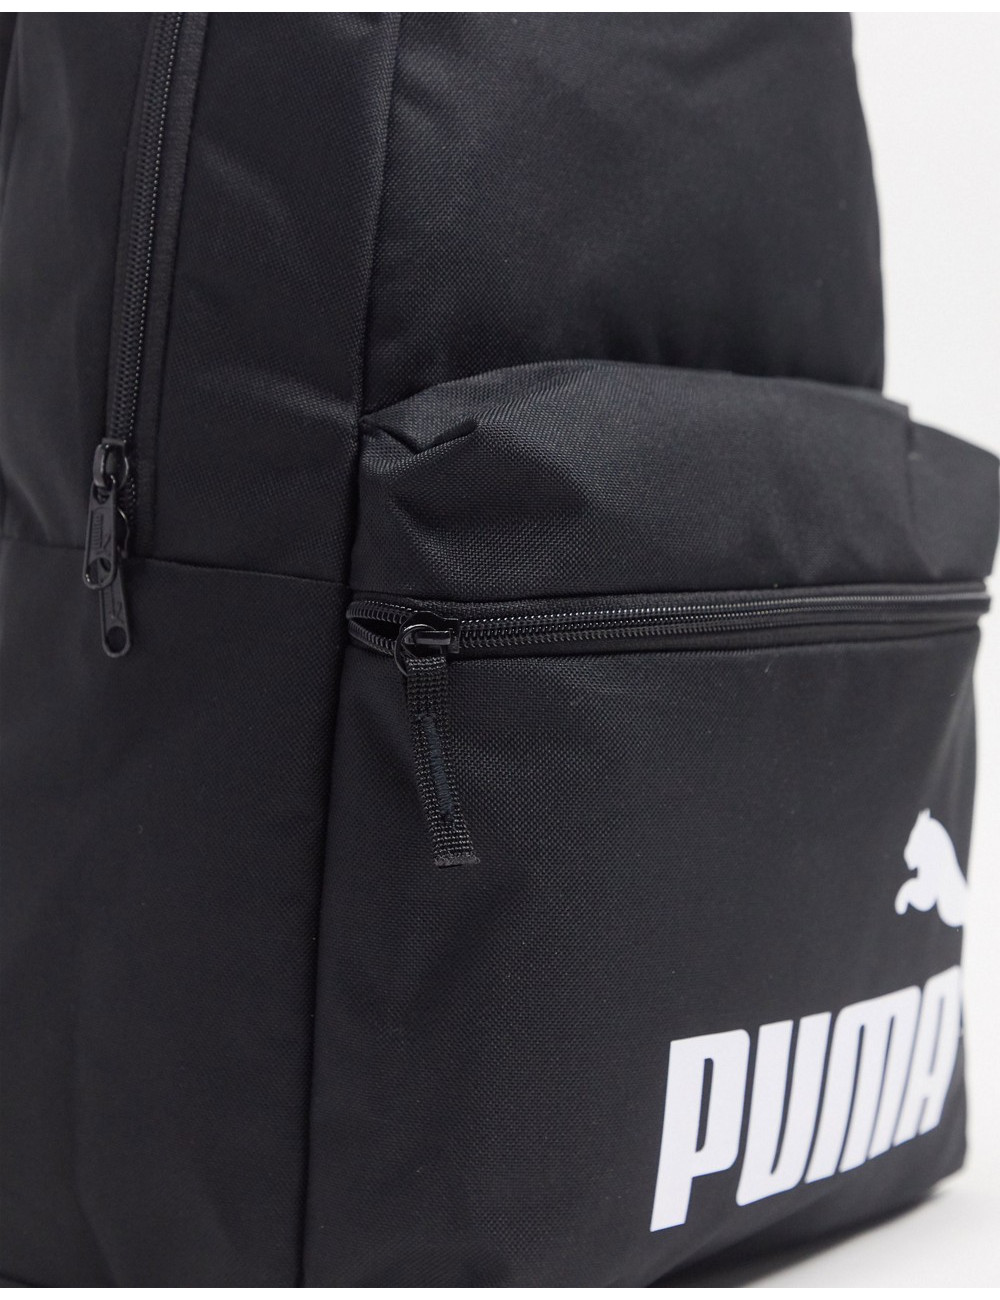 Puma Phase backpack in black